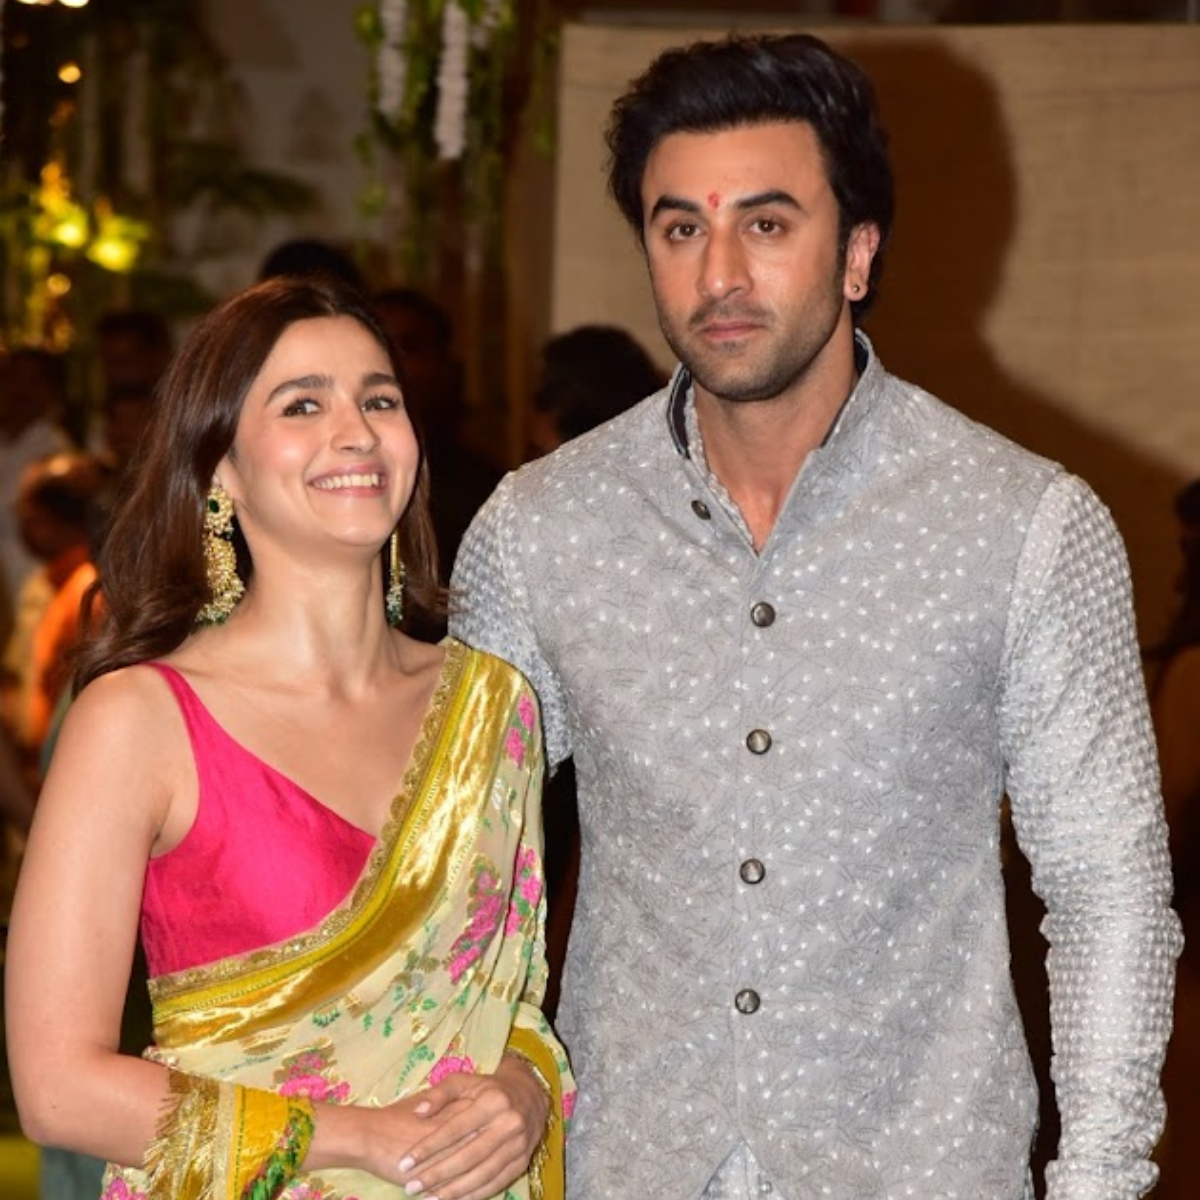 EXCLUSIVE: Ranbir Kapoor and Alia Bhatt getting married in April? Actor’s aunt Rima Jain clarifies